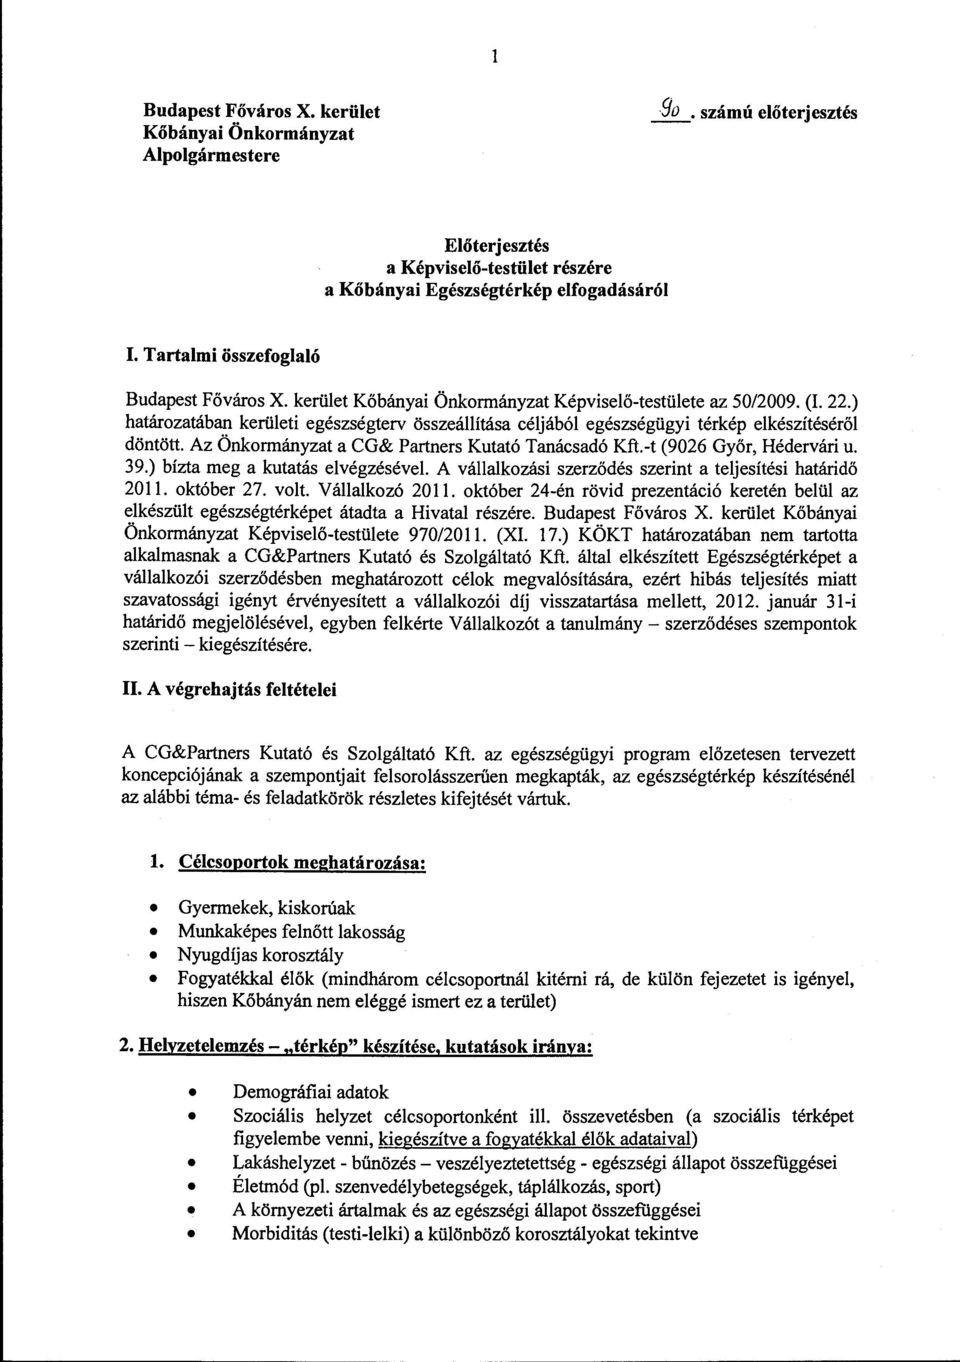 Az Önkormányzat a CG& Partners Kutató Tanácsadó Kft.-t (9026 Győr, Hédervári u. 39.) bízta meg a kutatás elvégzésével. A vállalkozási szerződés szerint a teljesítési határidő 2011. október 27. volt.